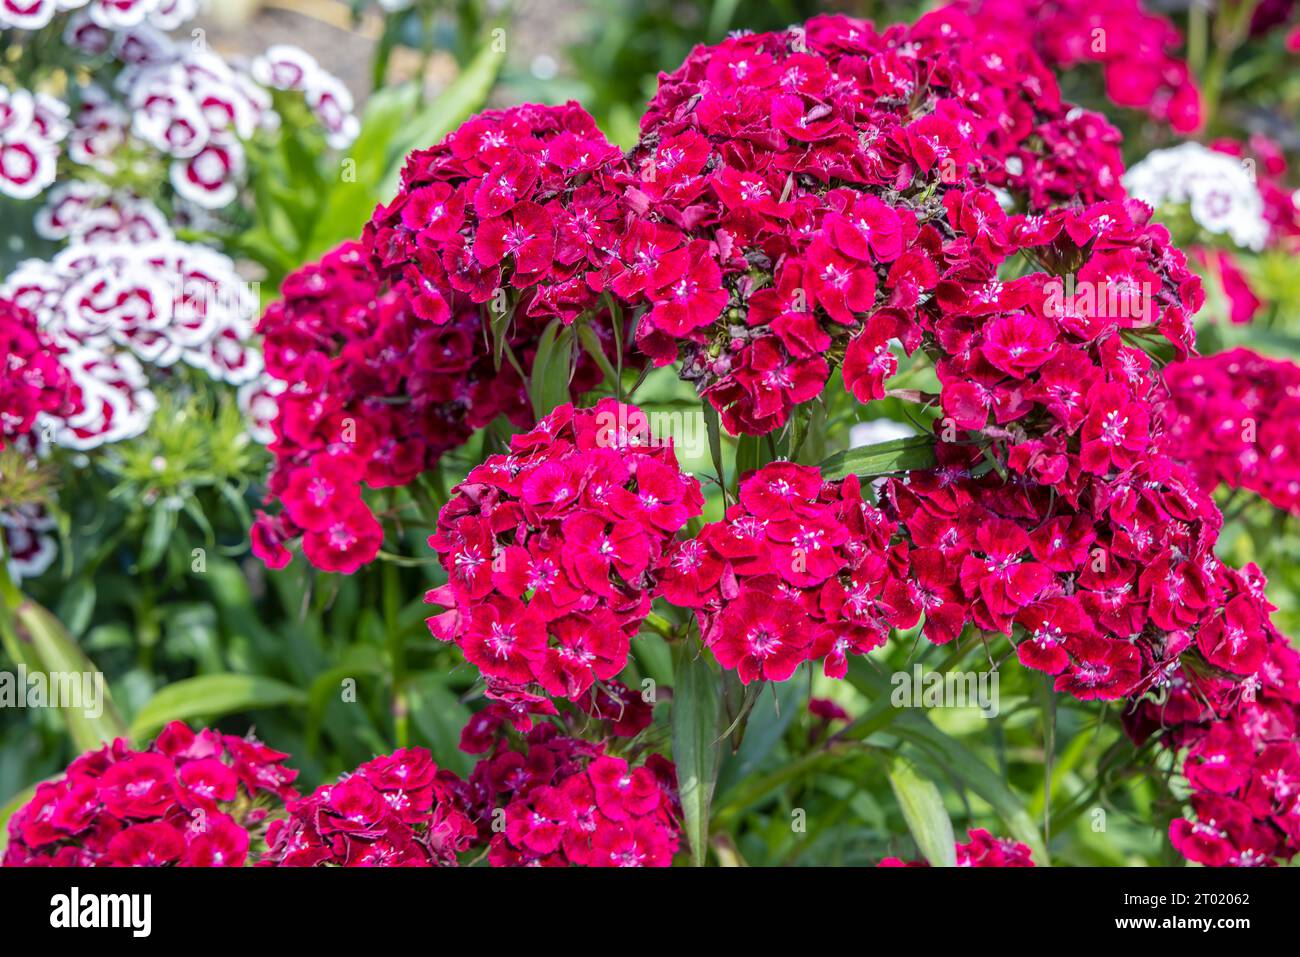 Fleurs rouges de Dianthus barbatus, le doux William, espèce de plante à fleurs de la famille des Caryophyllaceae. Banque D'Images